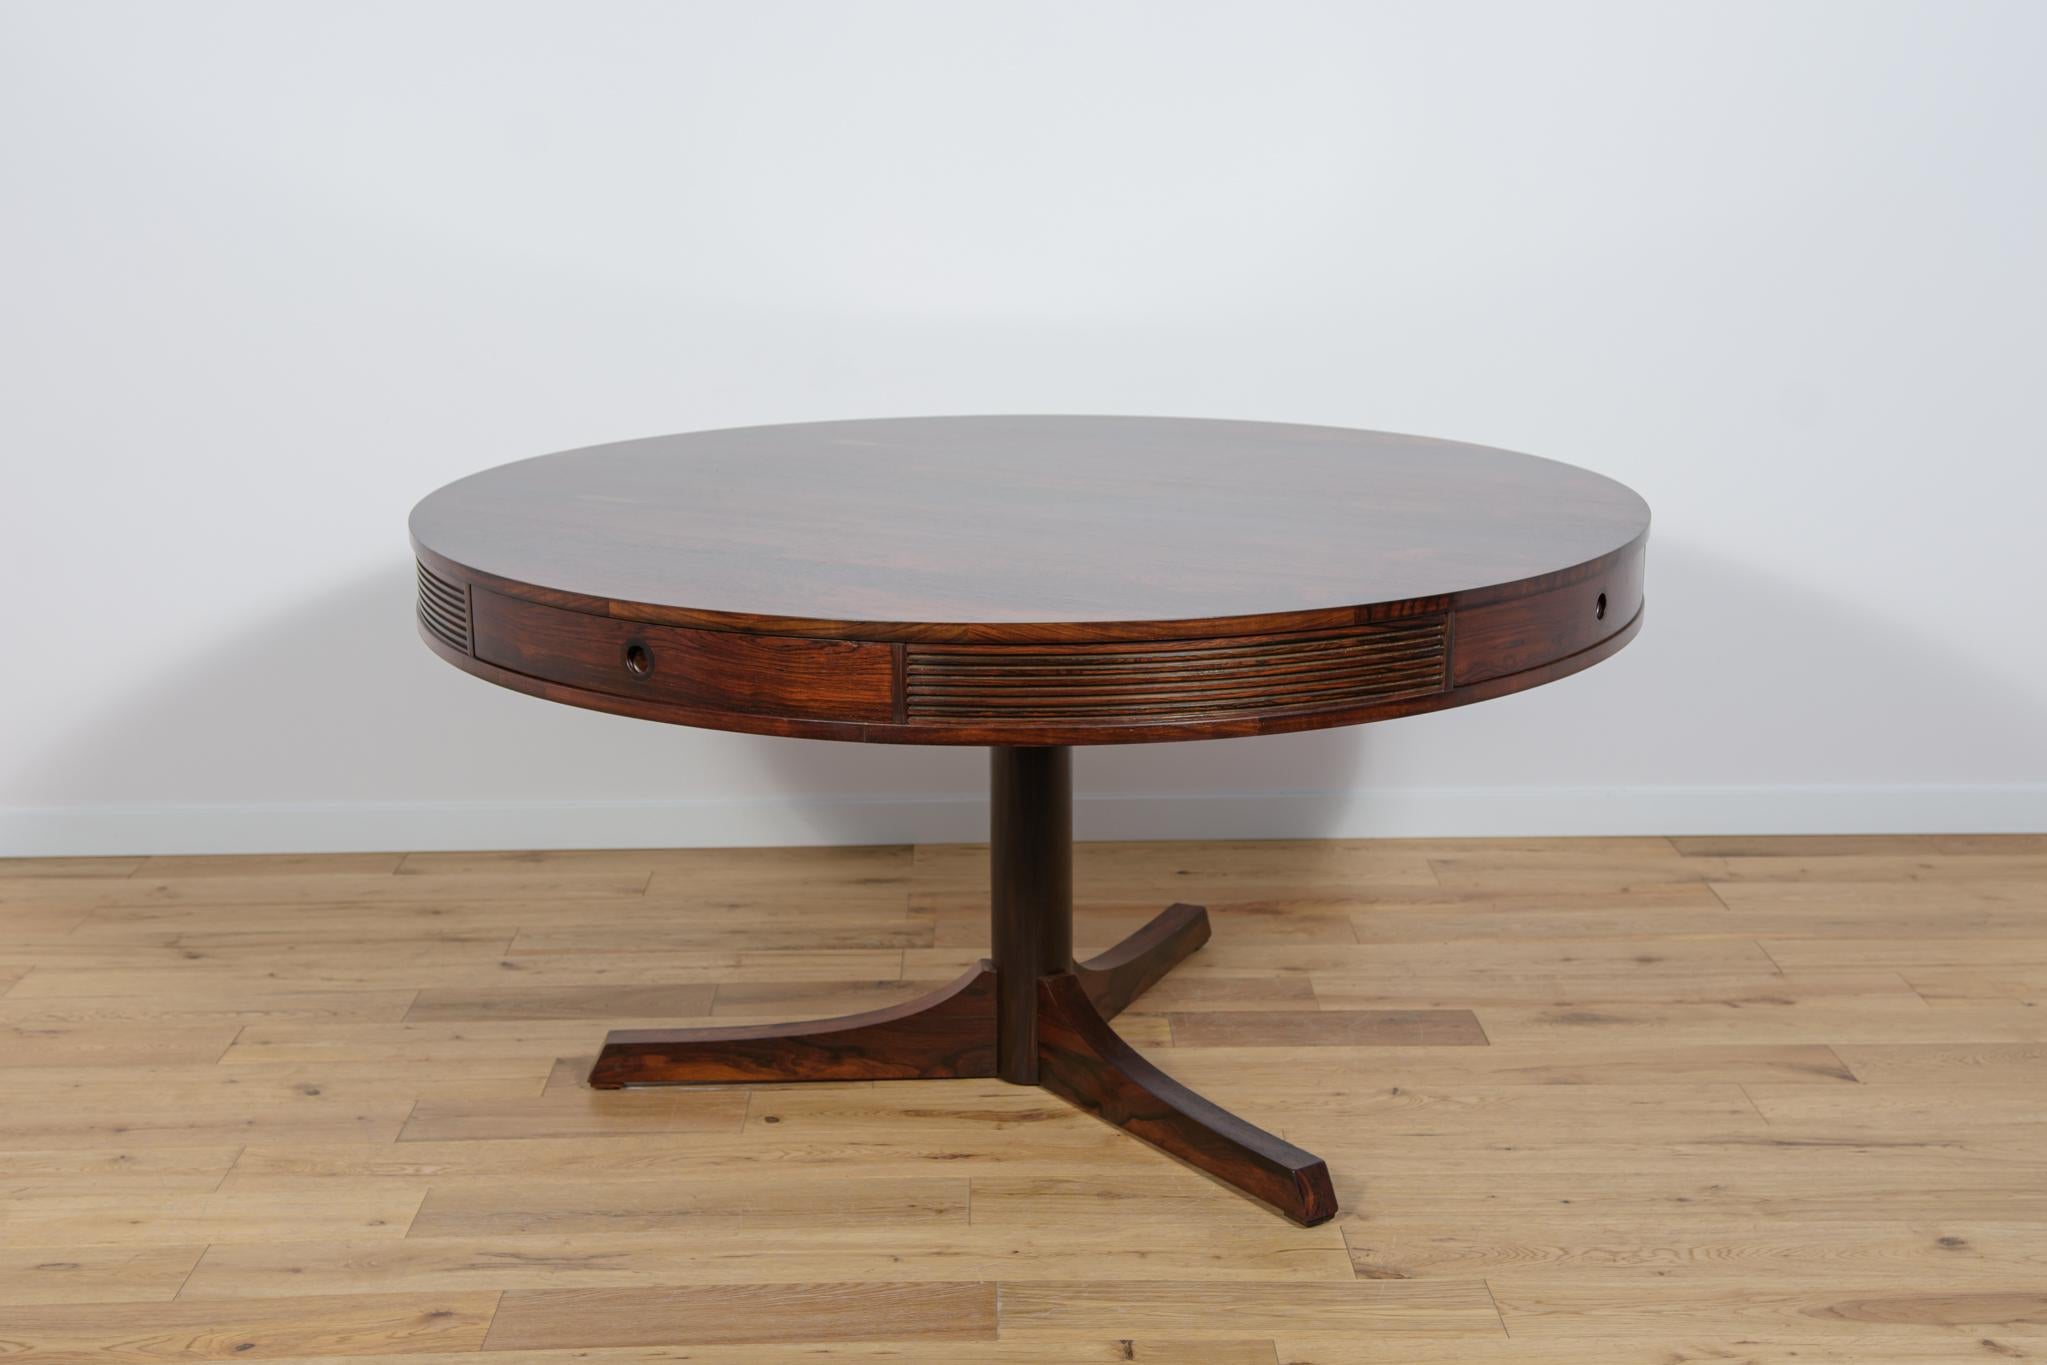 La table de salle à manger a été conçue en 1957 par Robert Heritage et fabriquée par Archie Shine à la fin des années 1950. La table faisait partie de la gamme de meubles de luxe Bridgeford, vendue dans les magasins Heal's pendant cette période. Le